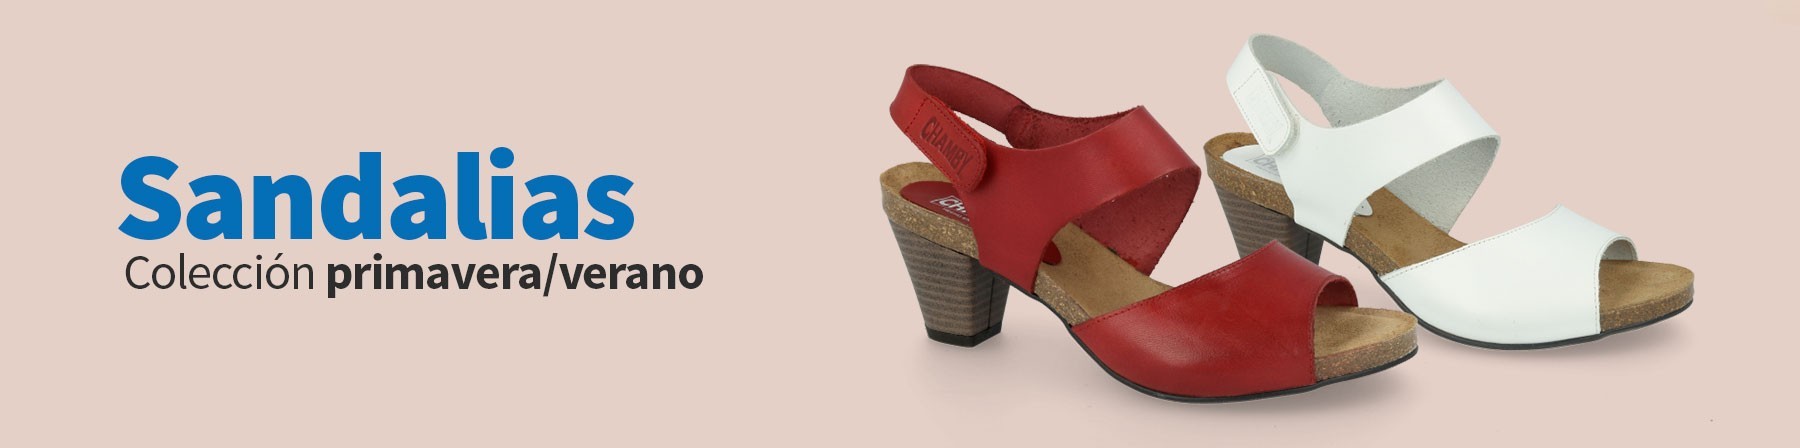 Sandalias comodas mujer, Sandalias mujer piel |ZapatoDirecto